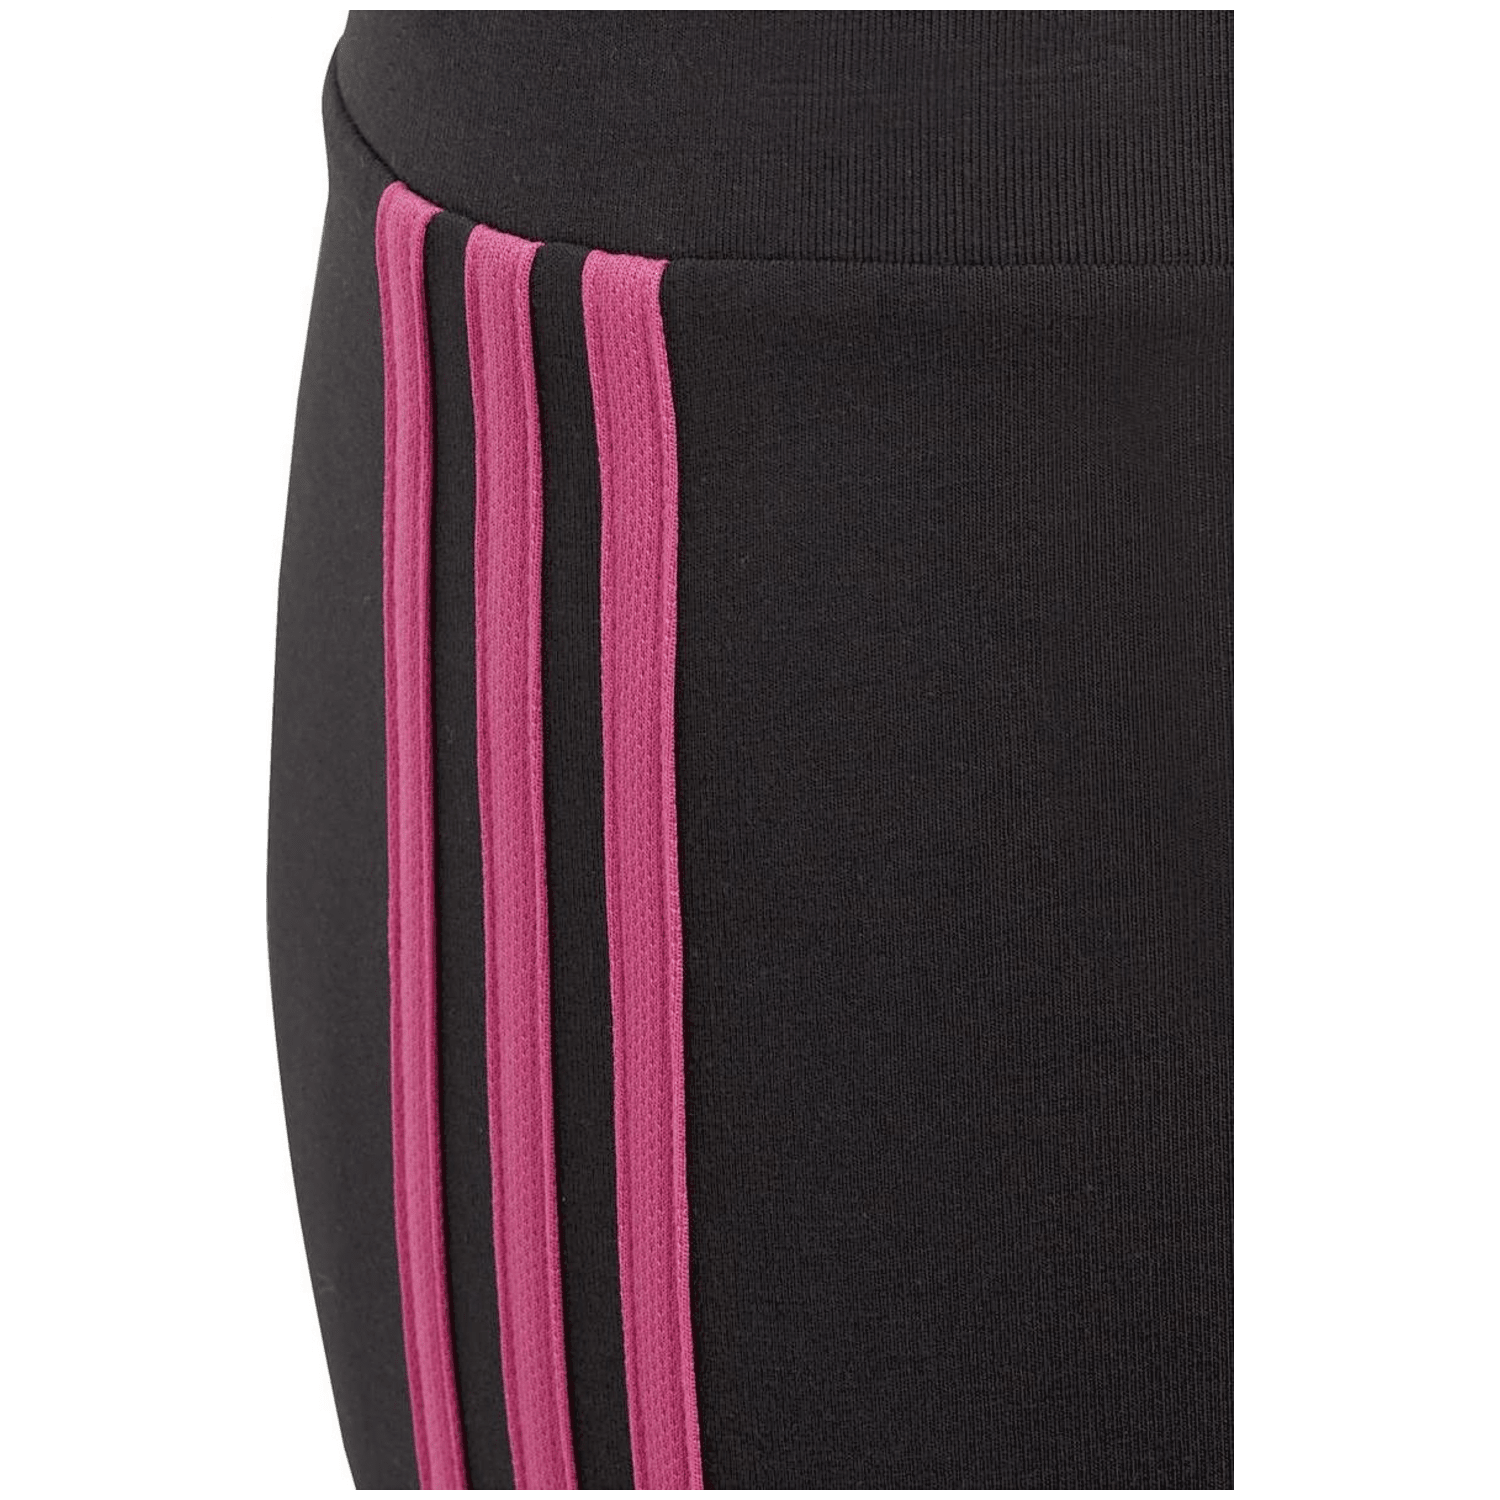 Adidas Essentials 3-Streifen Cotton Leggings Mädchen